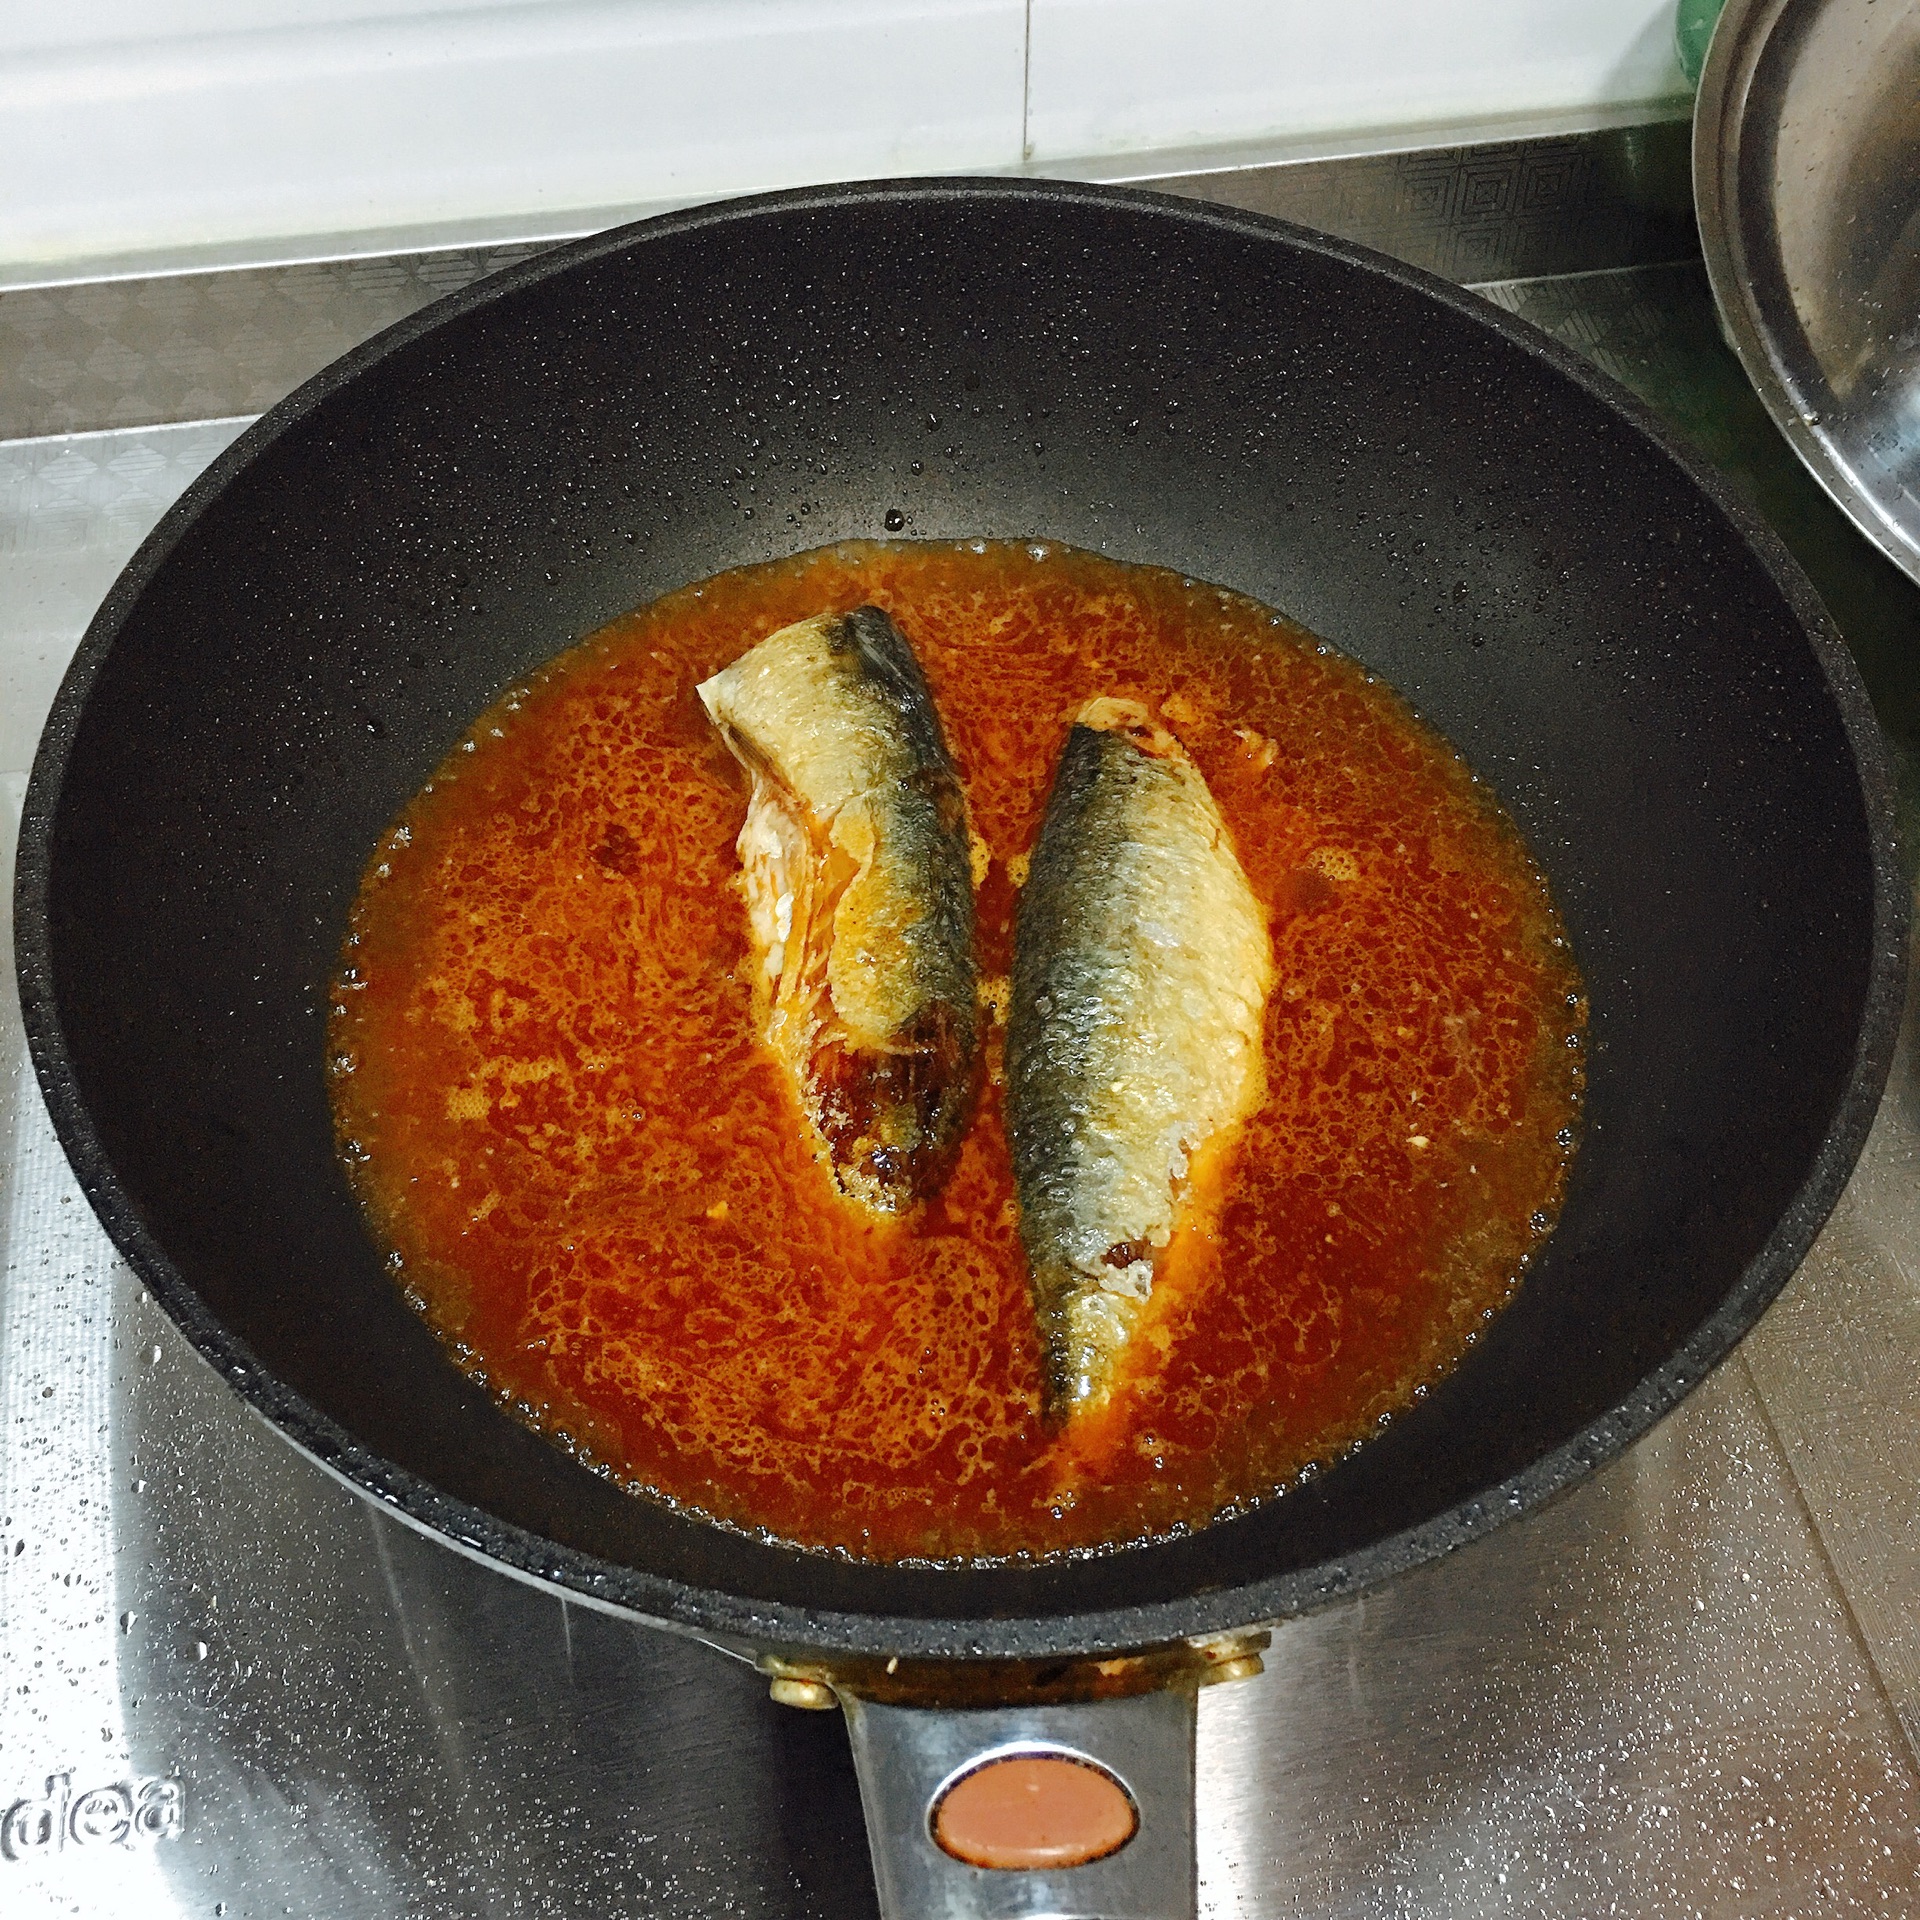 茄汁鱼片,茄汁鱼片的家常做法 - 美食杰茄汁鱼片做法大全